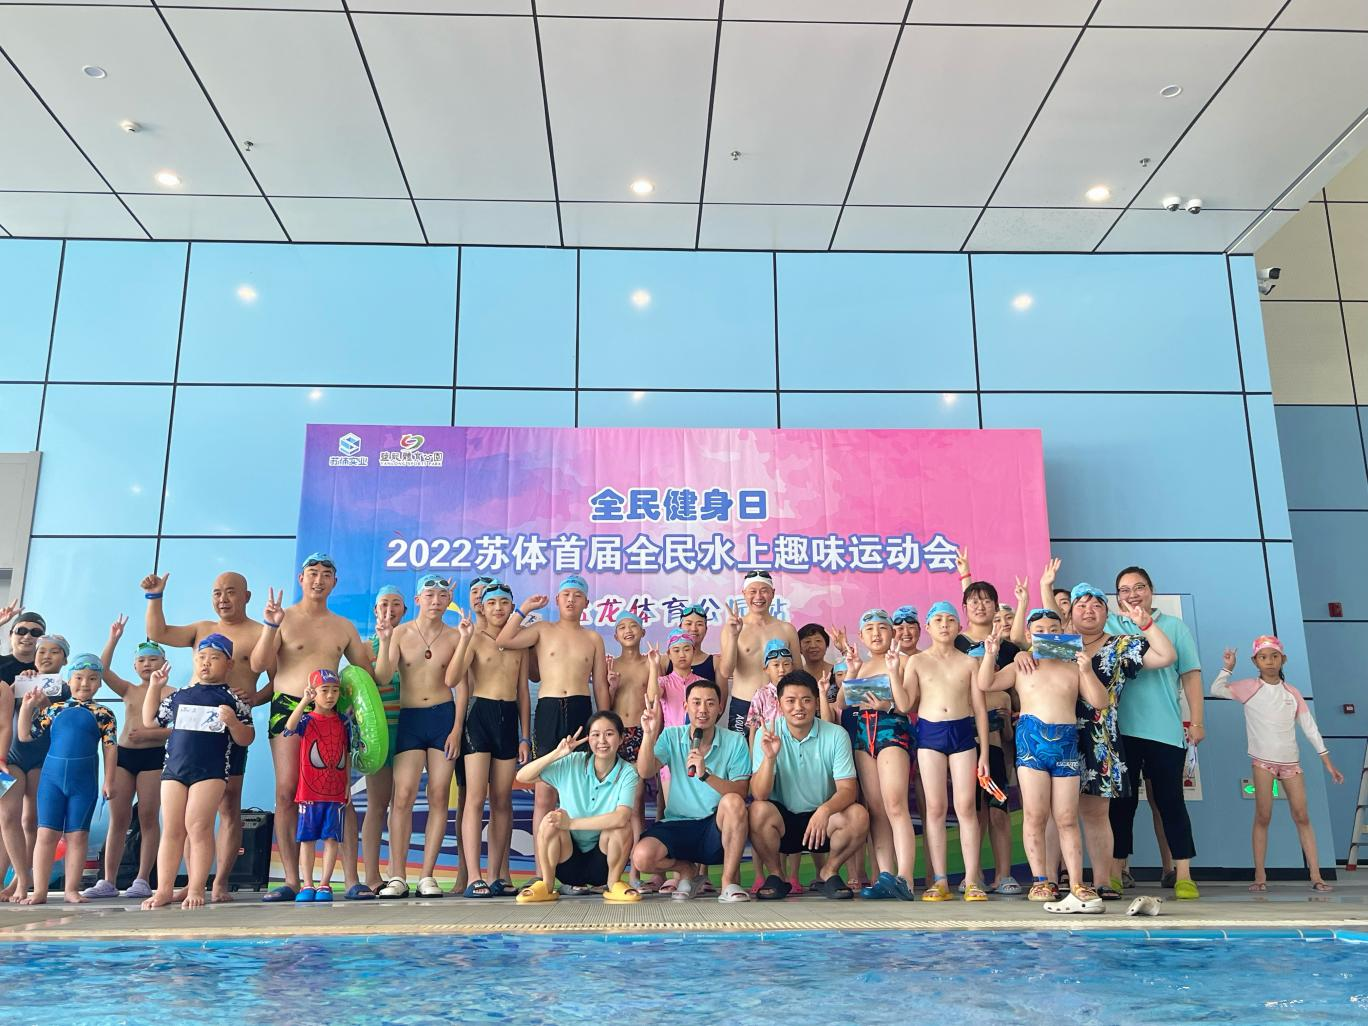 2022年苏体场馆“全民健身日”主题活动暨苏体首届全民水上趣味运动会成功举办